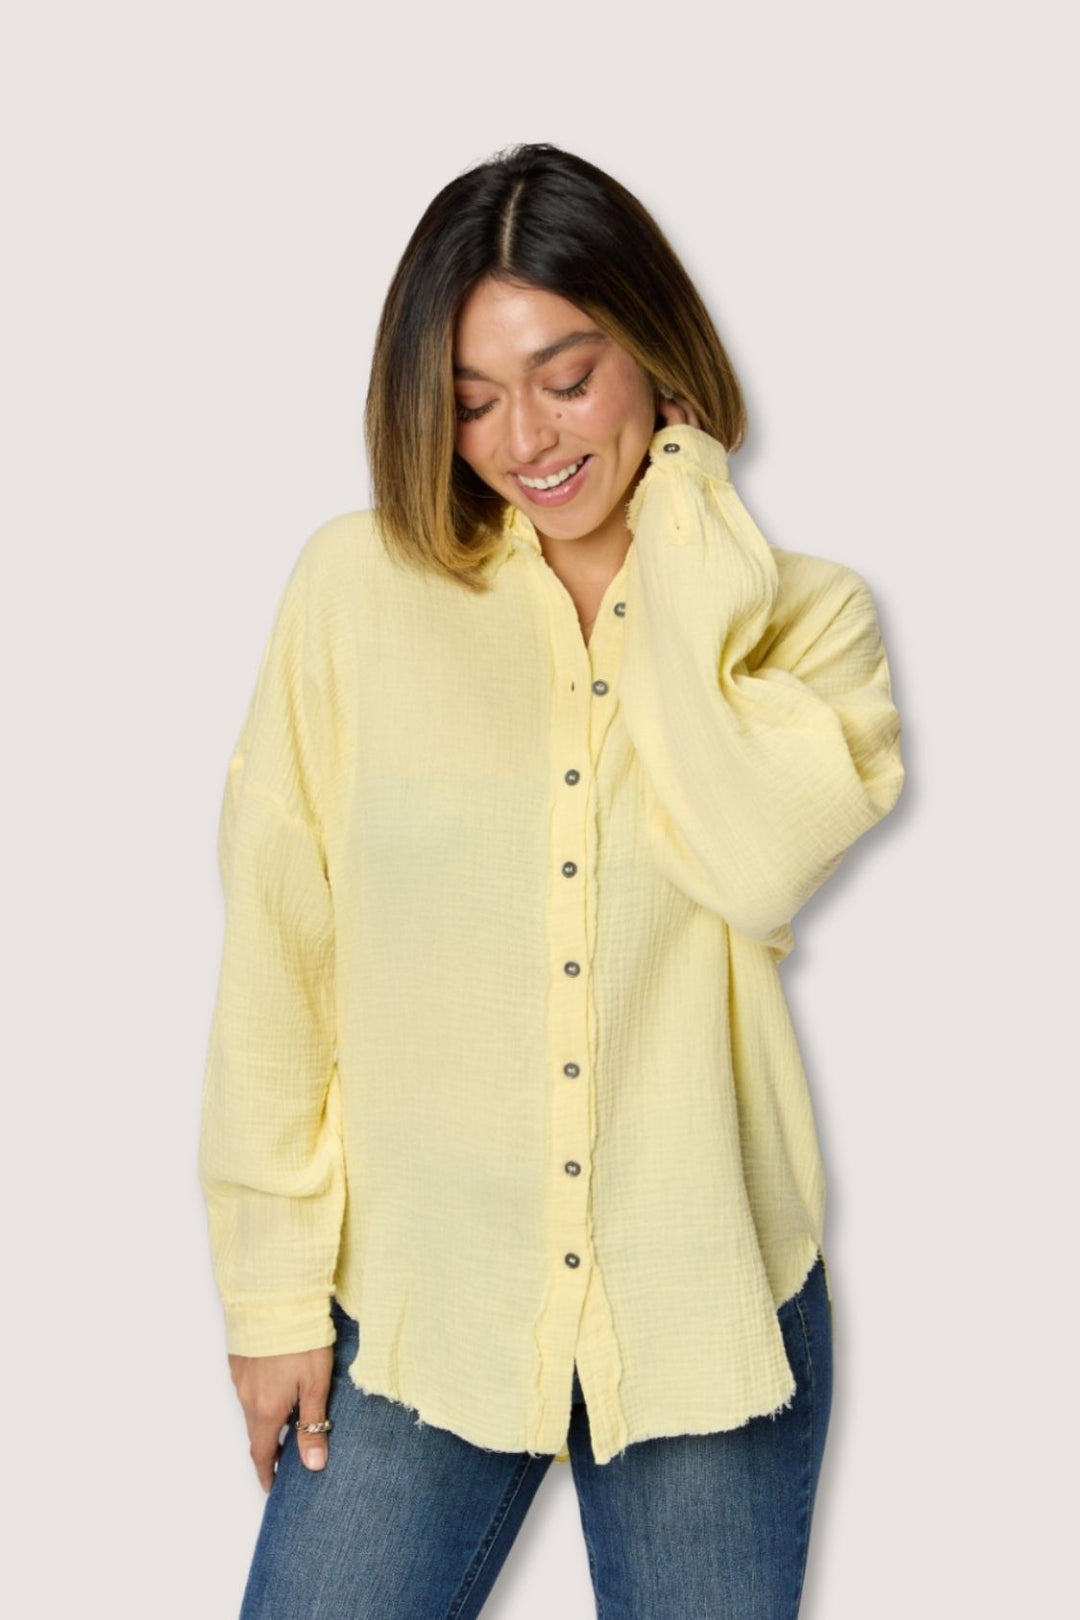 Zenana - Yellow Button Up Shirt - Womens - Inspired Eye Boutique